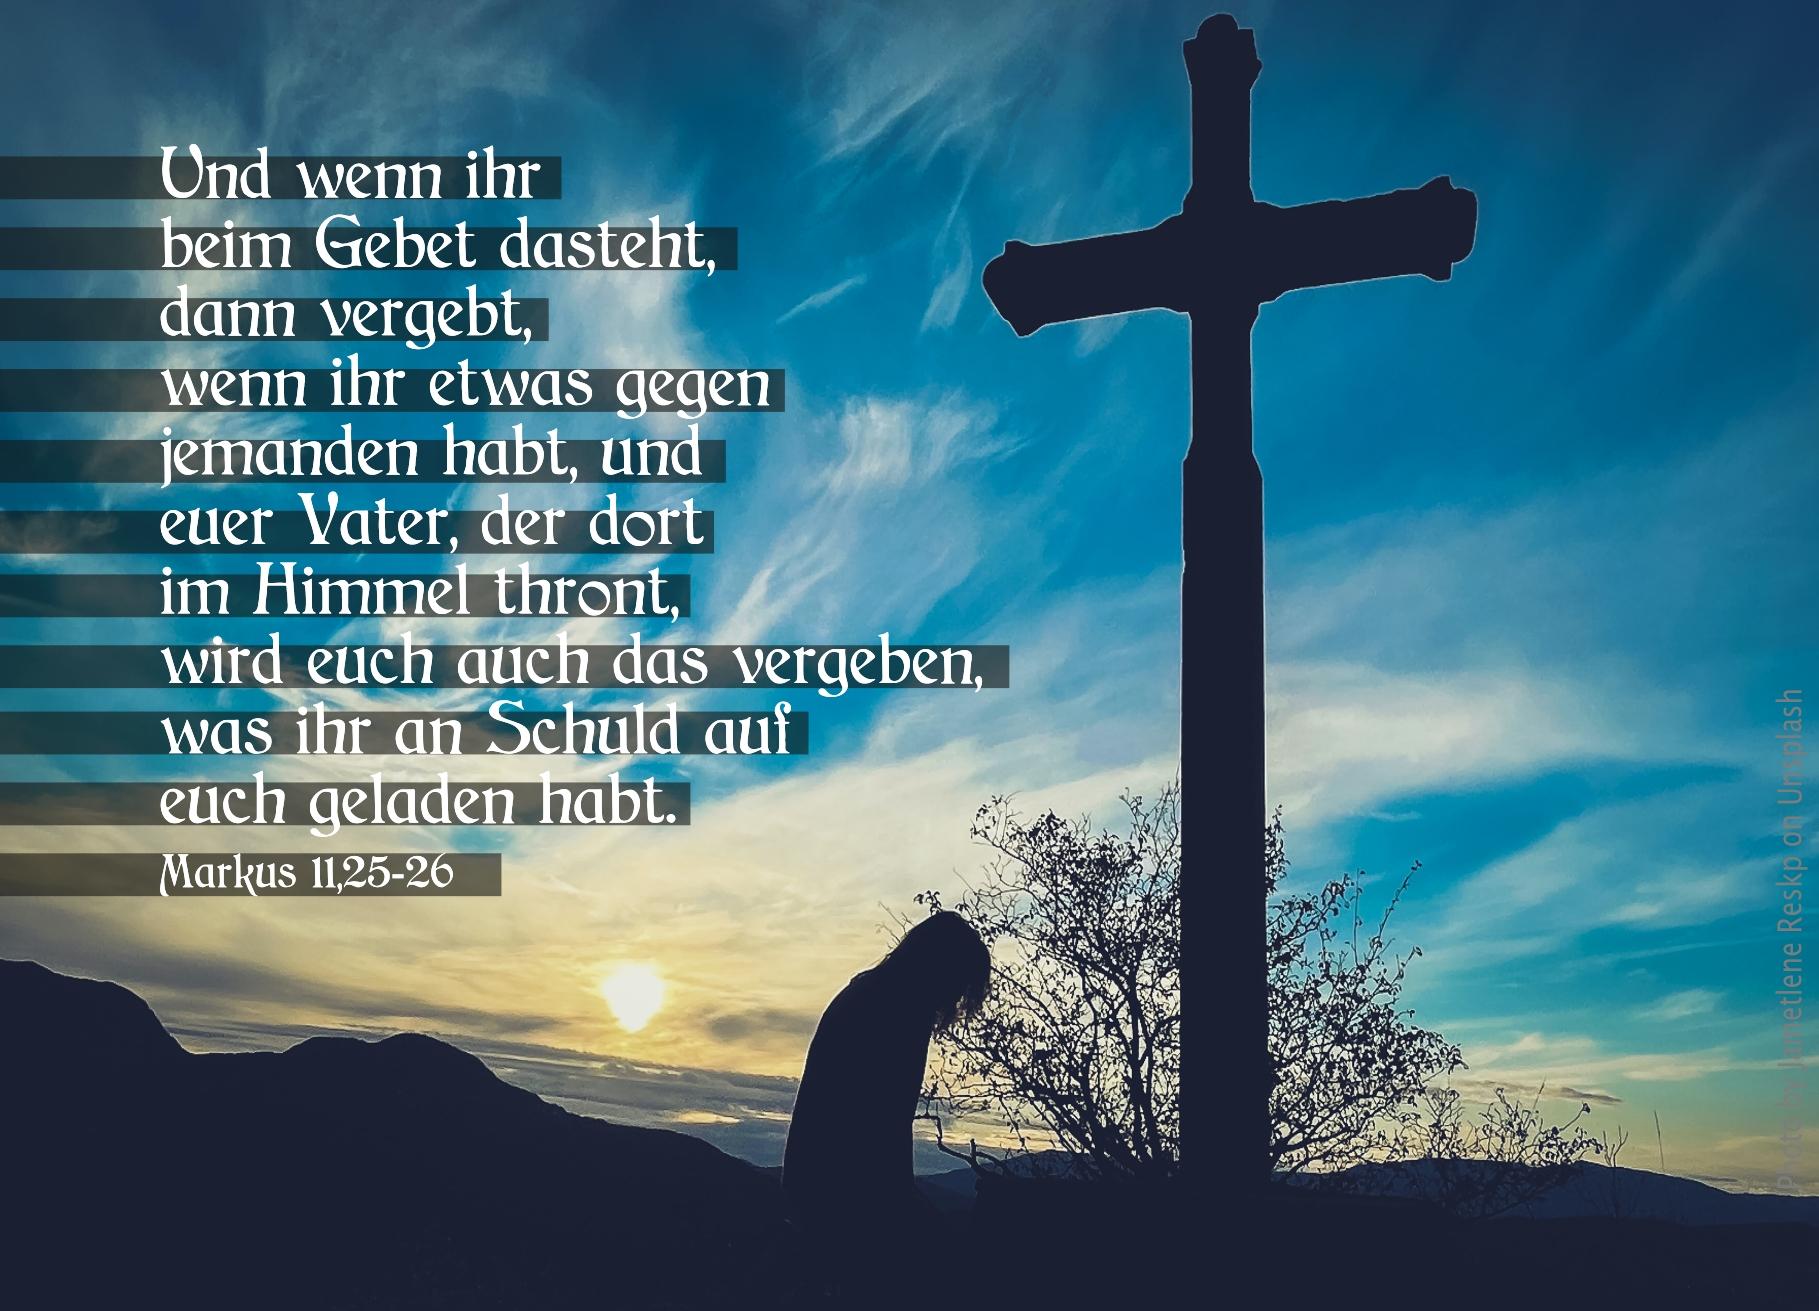 alt="kreuz-silhouette_mit_gebeugter_person_erwartet_bibelhoerbuch_ein_haus_des_gebets"